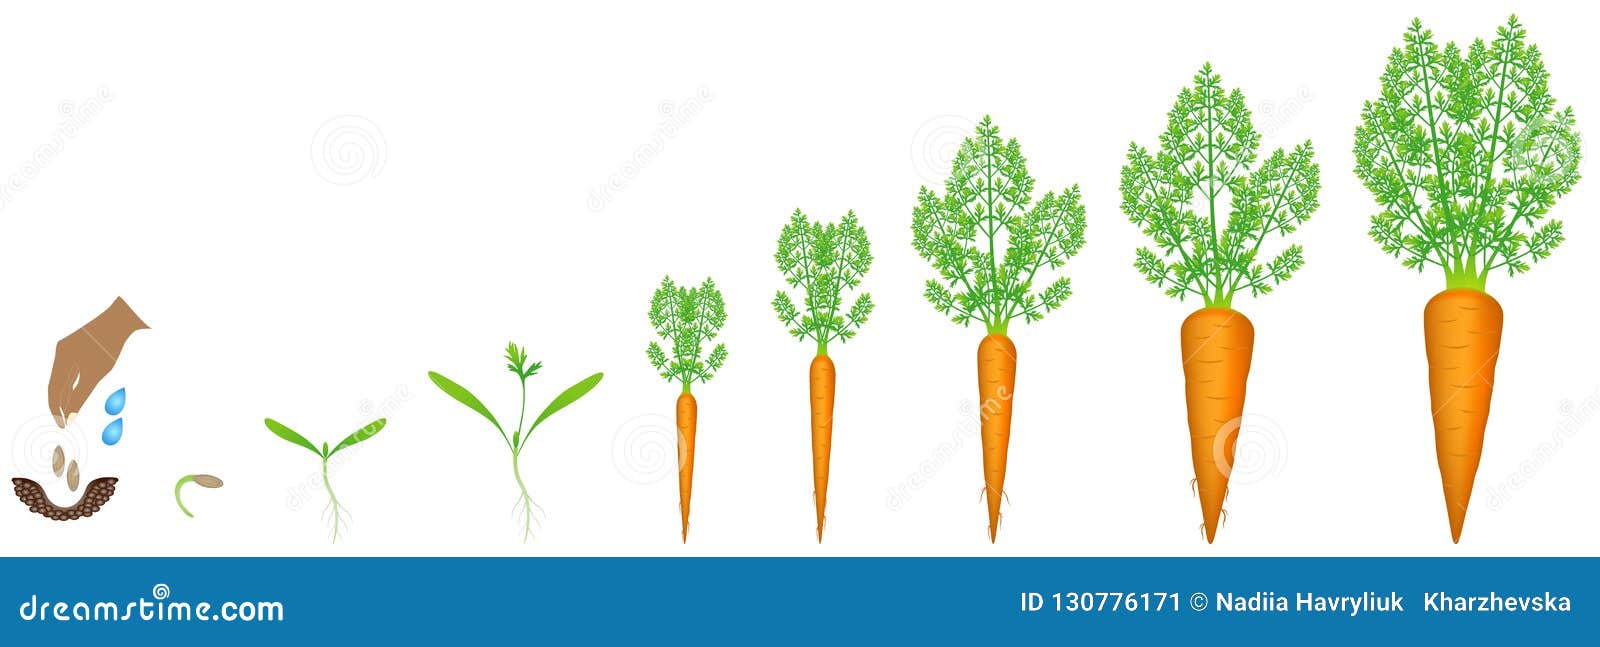 Морковь группа растений. Цикл развития посевной моркови. Этапы роста моркови. Стадии развития моркови. Стадии роста моркови.